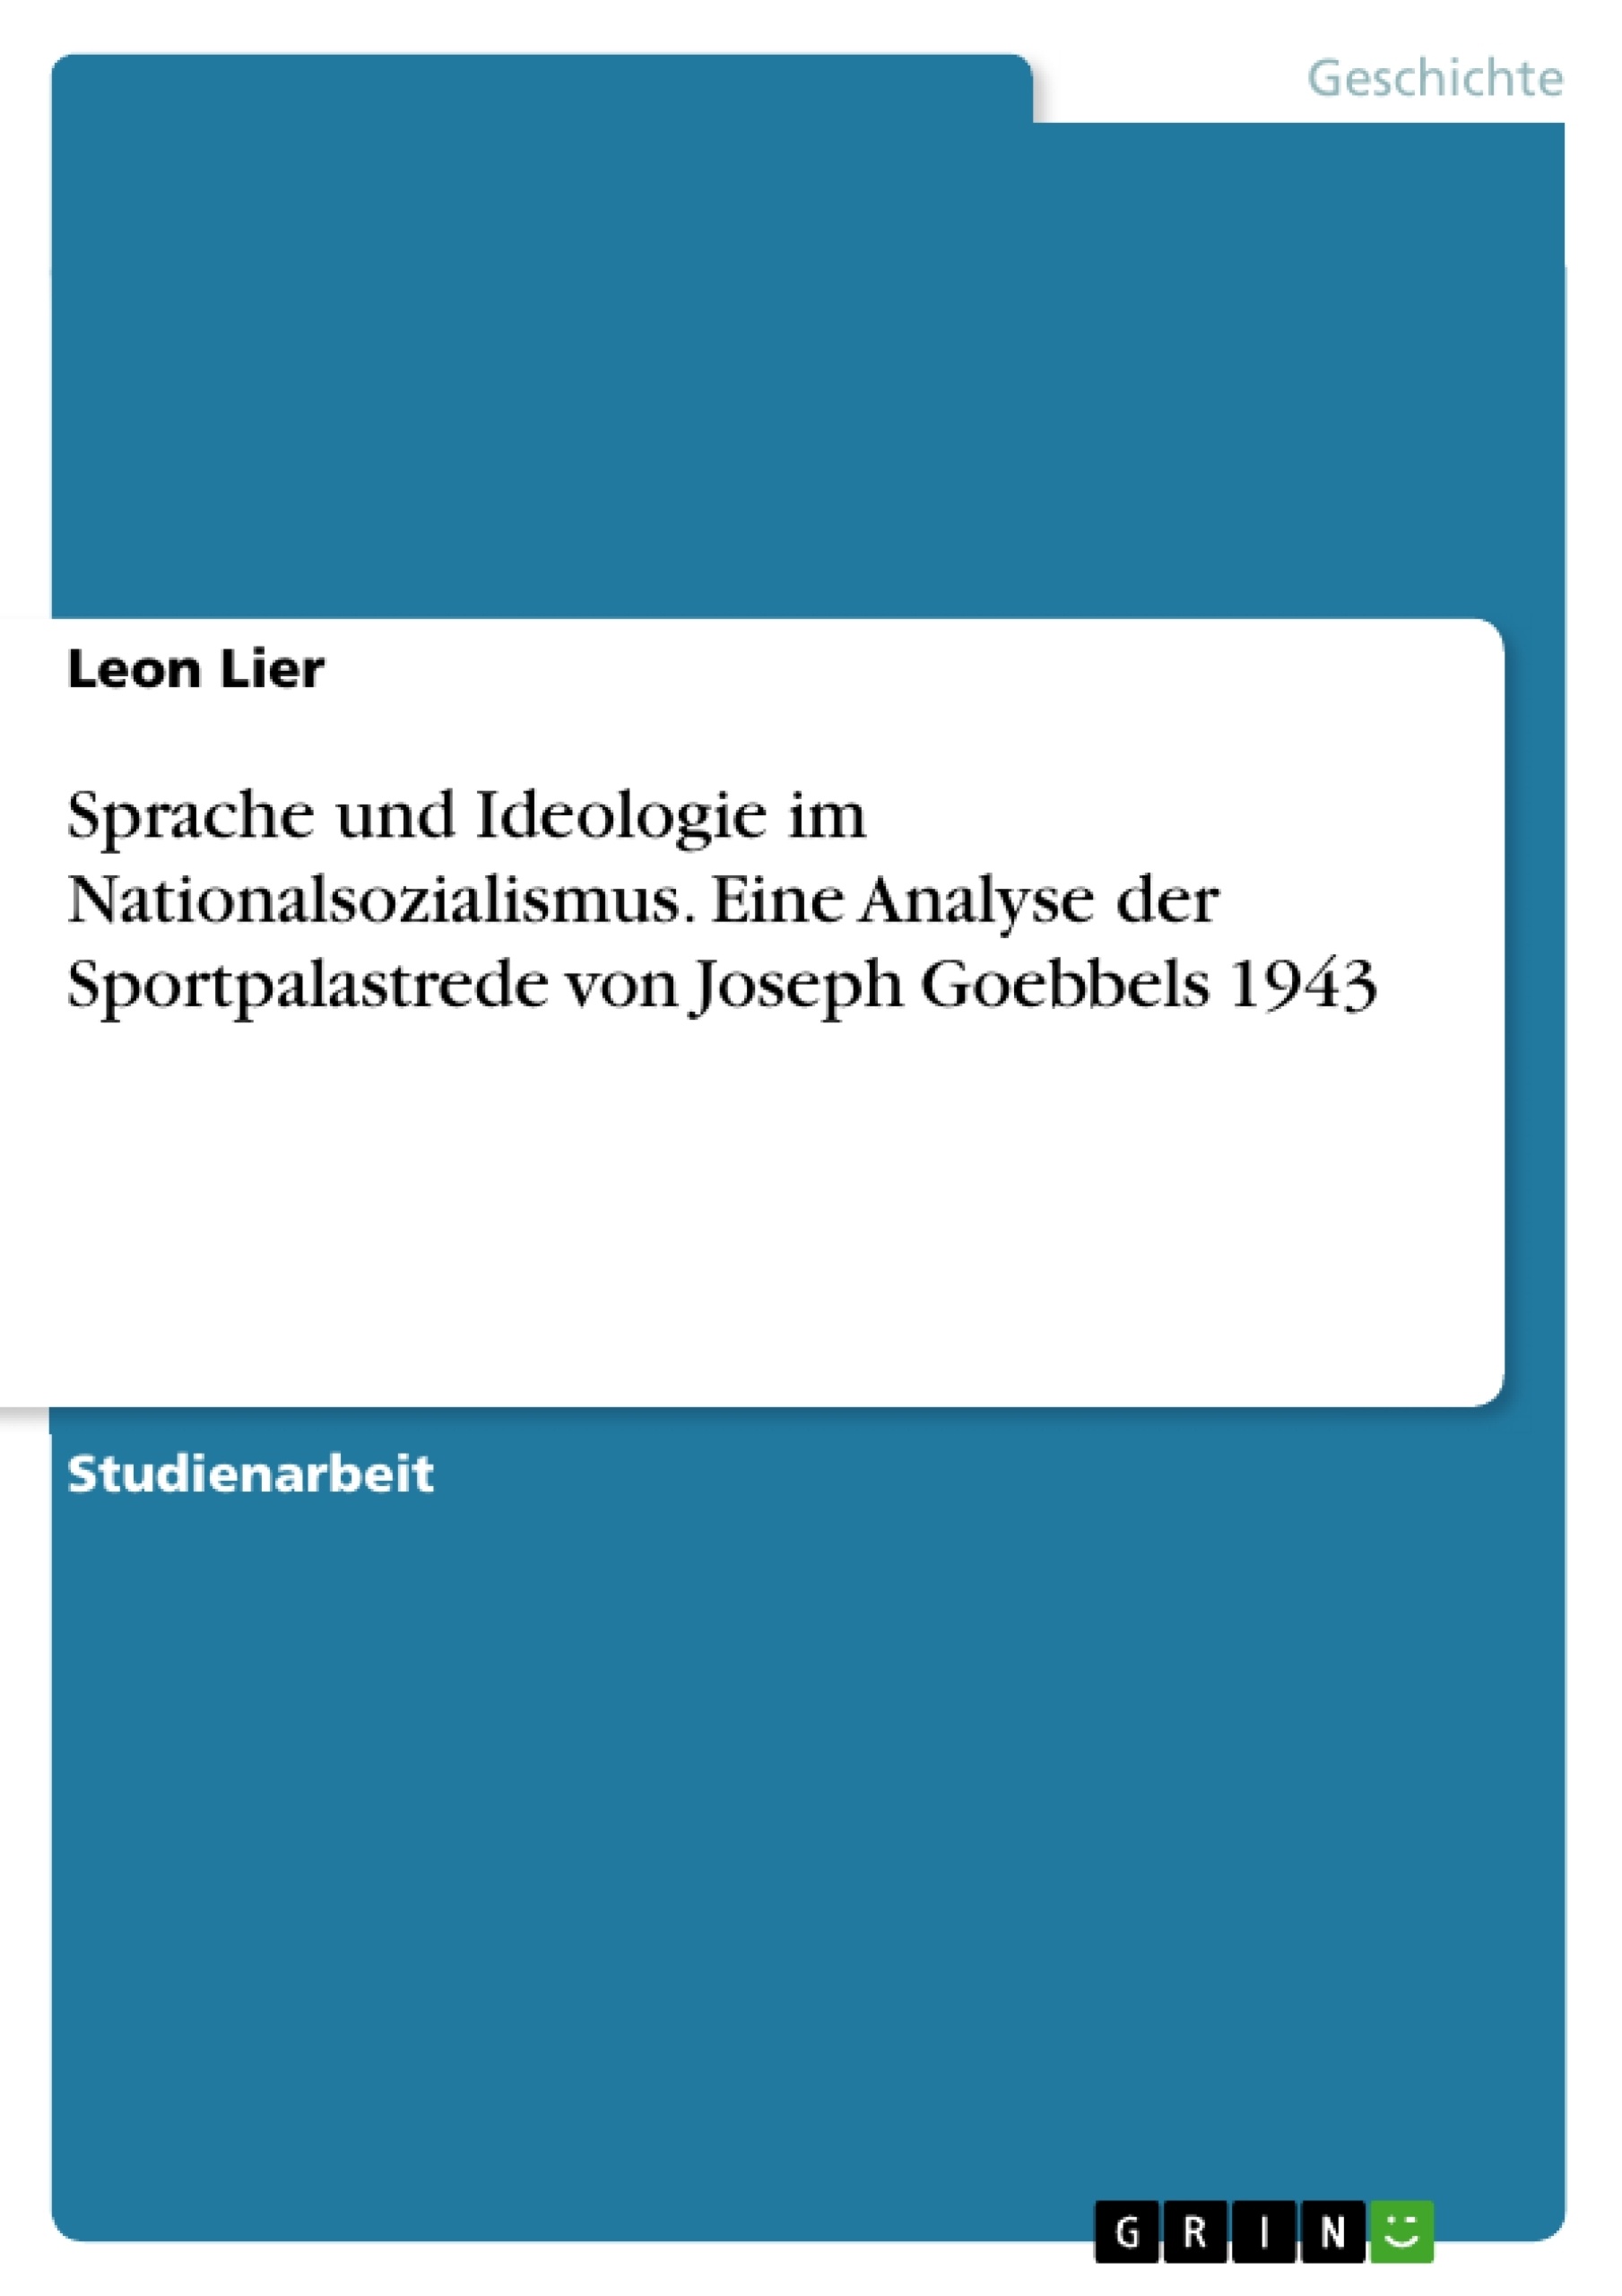 Titre: Sprache und Ideologie im Nationalsozialismus. Eine Analyse der Sportpalastrede von Joseph Goebbels 1943